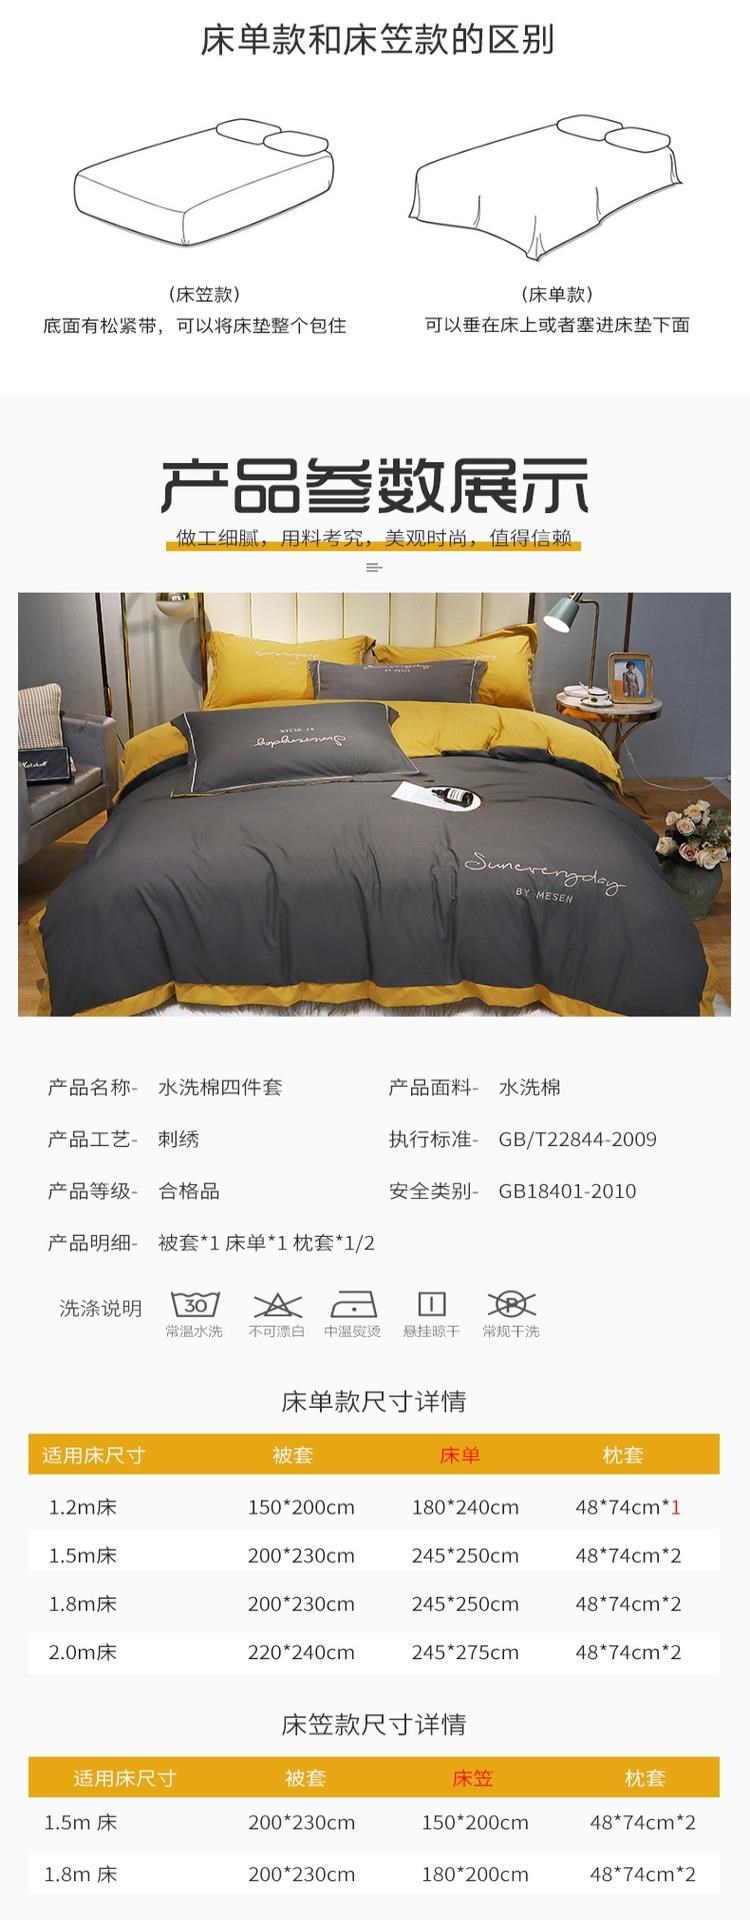 [Đề xuất bởi Xiaohongshu] Bộ ga trải giường bằng vải bông cotton bốn mảnh và vỏ chăn và vỏ chăn đơn giản - Trang bị Covers